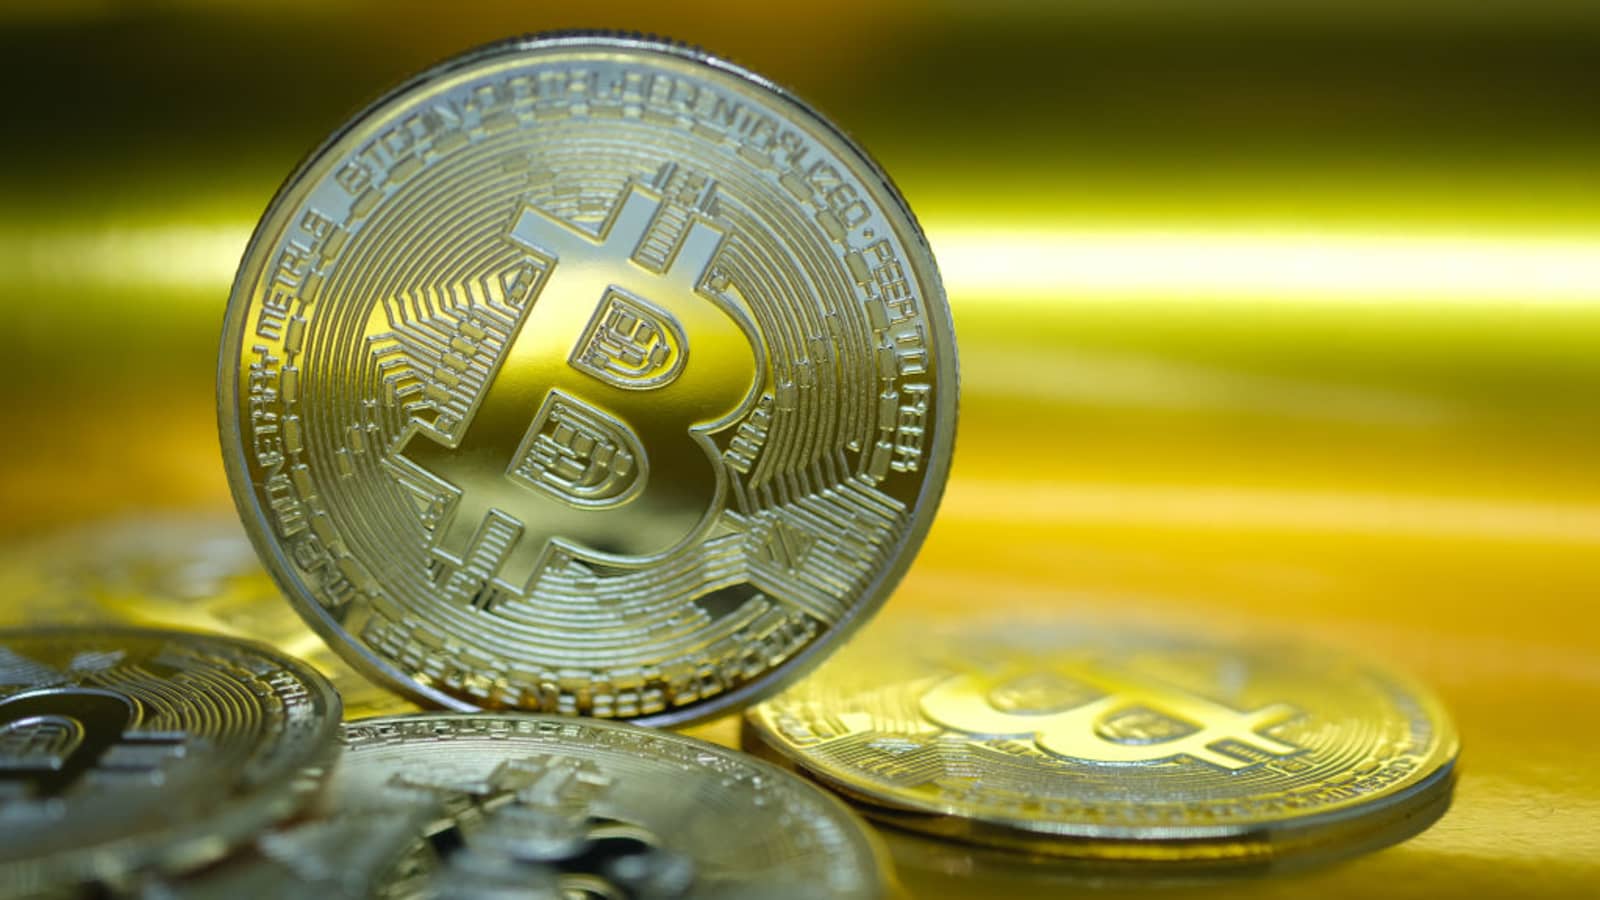 Câu chuyện về nguồn cung của Bitcoin và tại sao giá lại biến động mạnh hơn các tài sản tài chính khác